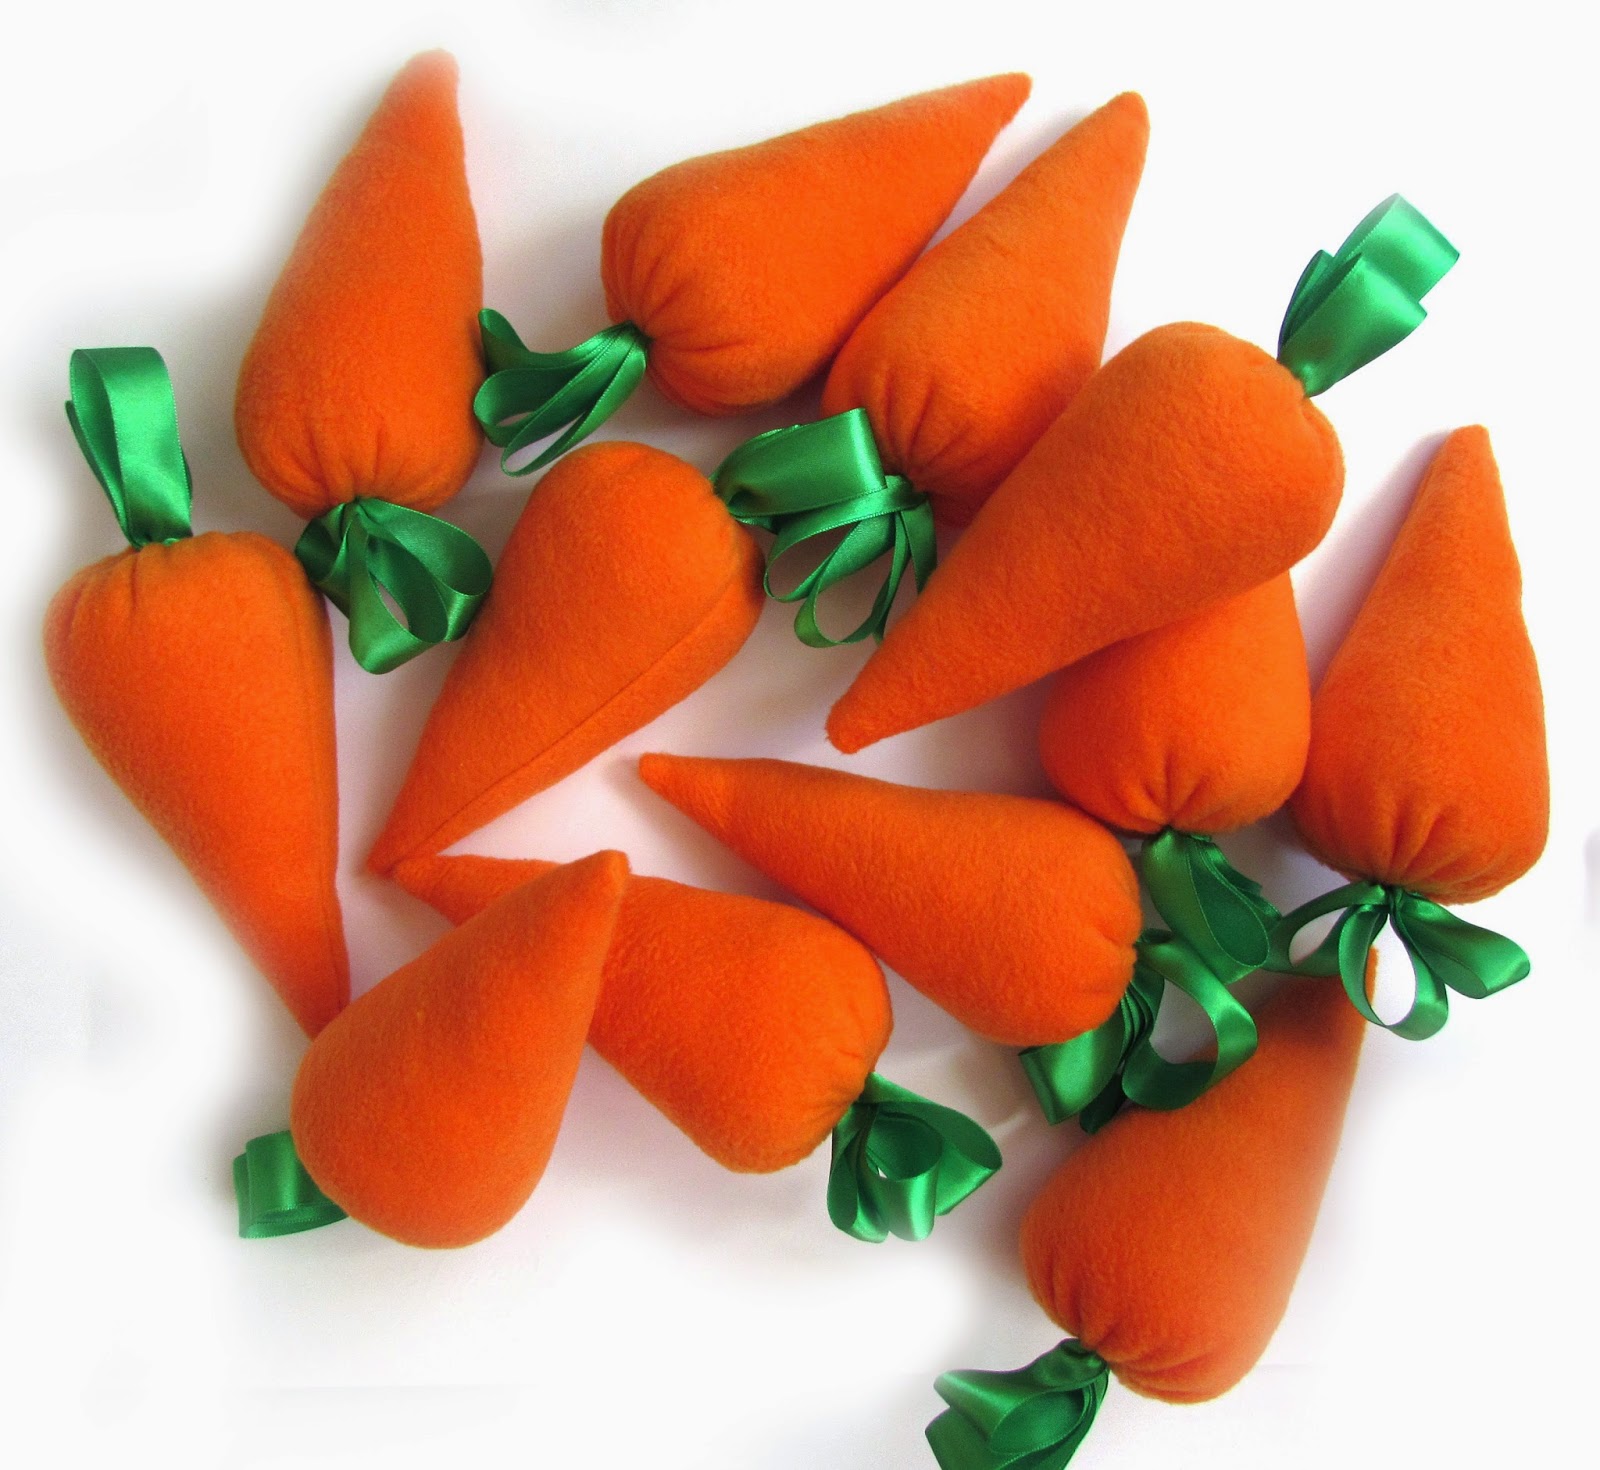 реквизит морковная грядка, грядка морковки реквизит,морковная грядка, реквизит для праздников, реквизит для аниматоров, праздники в Смоленске, детские праздники в Смоленске, реквизит для ведущих